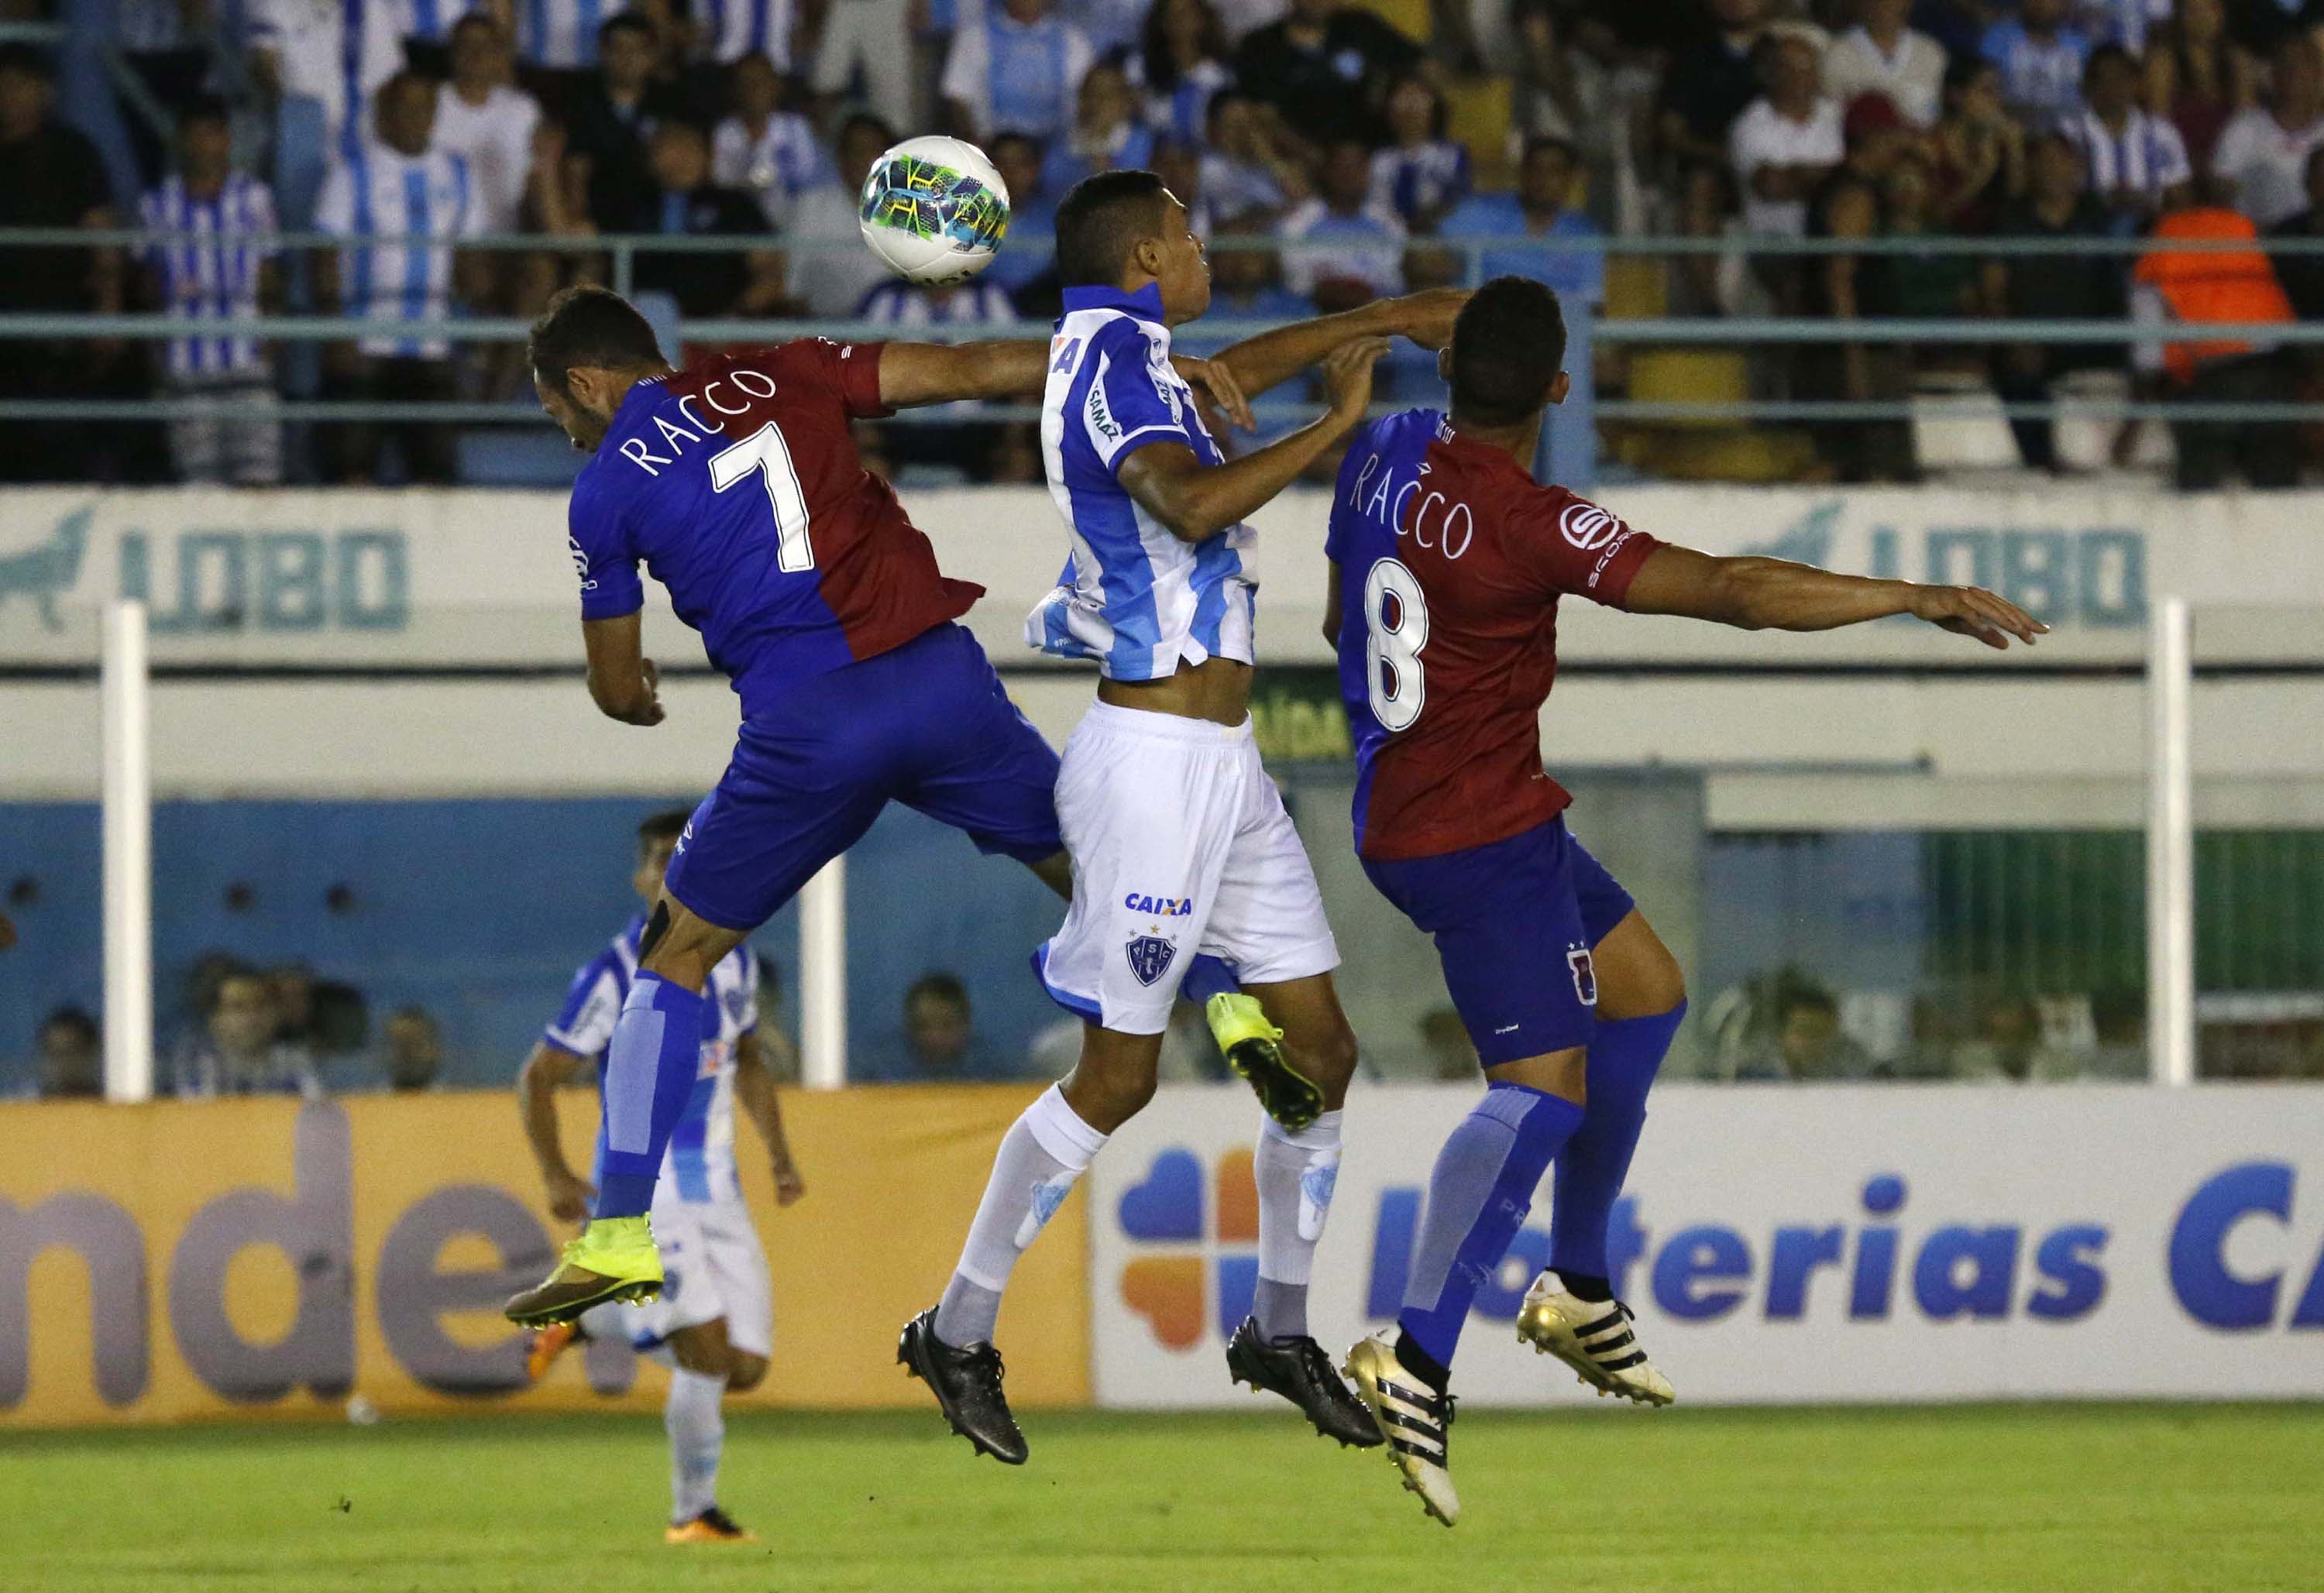 Diego Tavares e Johny na disputa. Eles se destacaram na partida de ontem. Foto: Ricardo Lima/Estadão Conteúdo